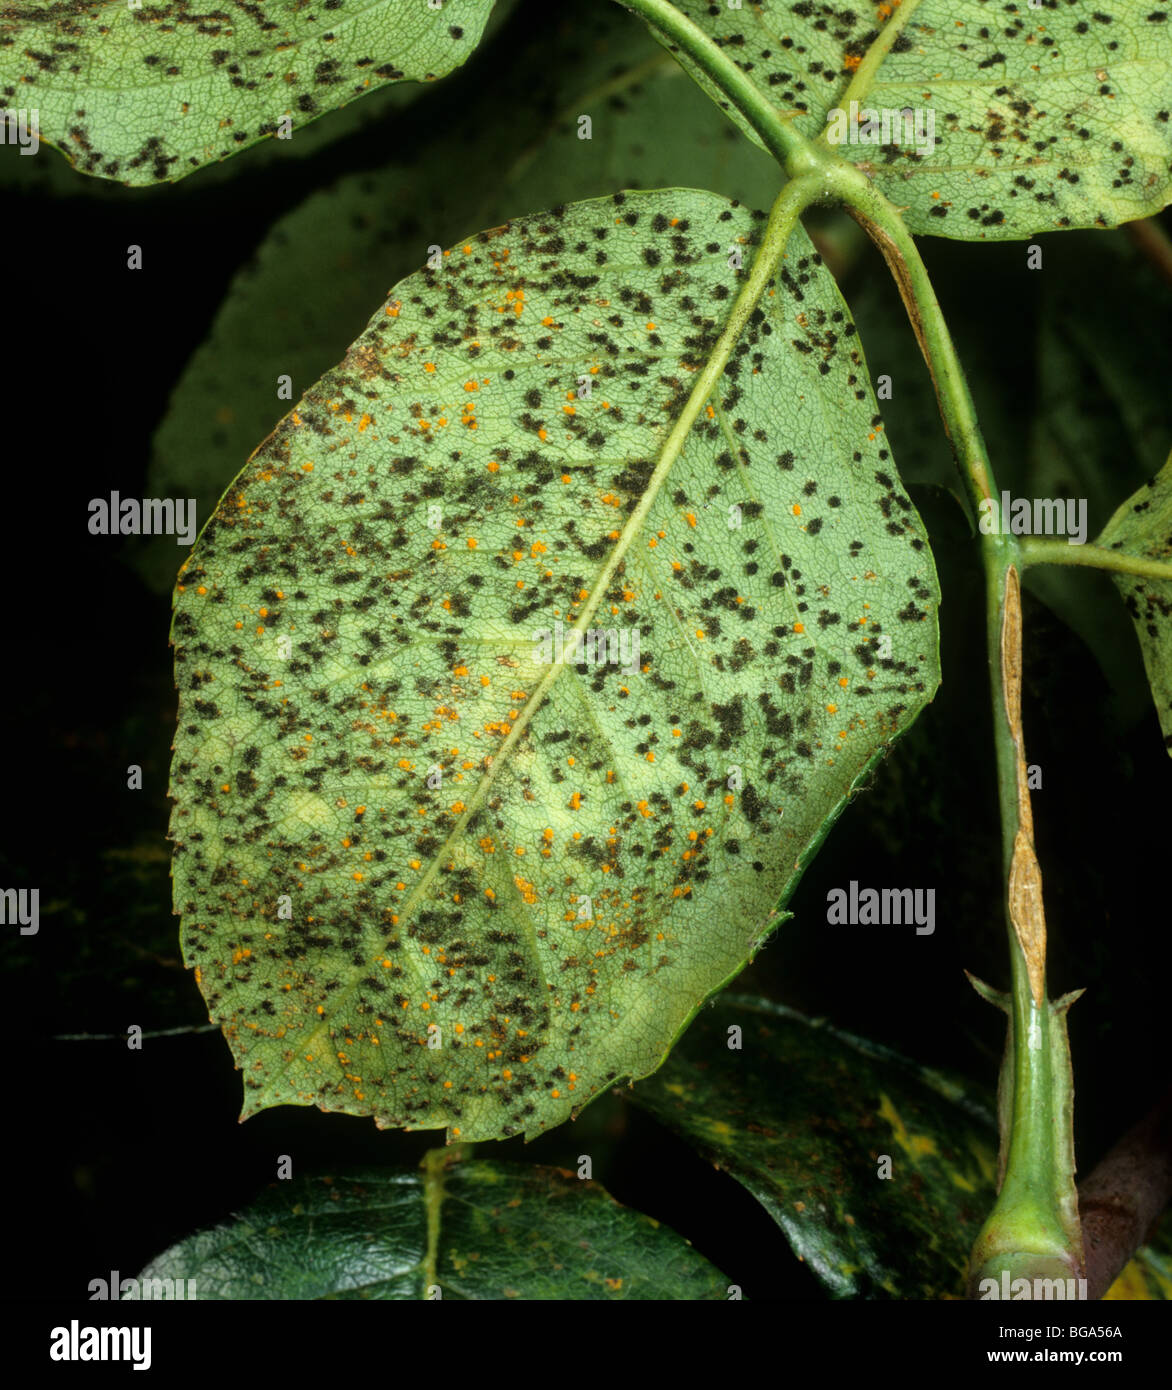 Rose rust (Phragmidium tuberculatum) teliospore pustules on leaf underside Stock Photo